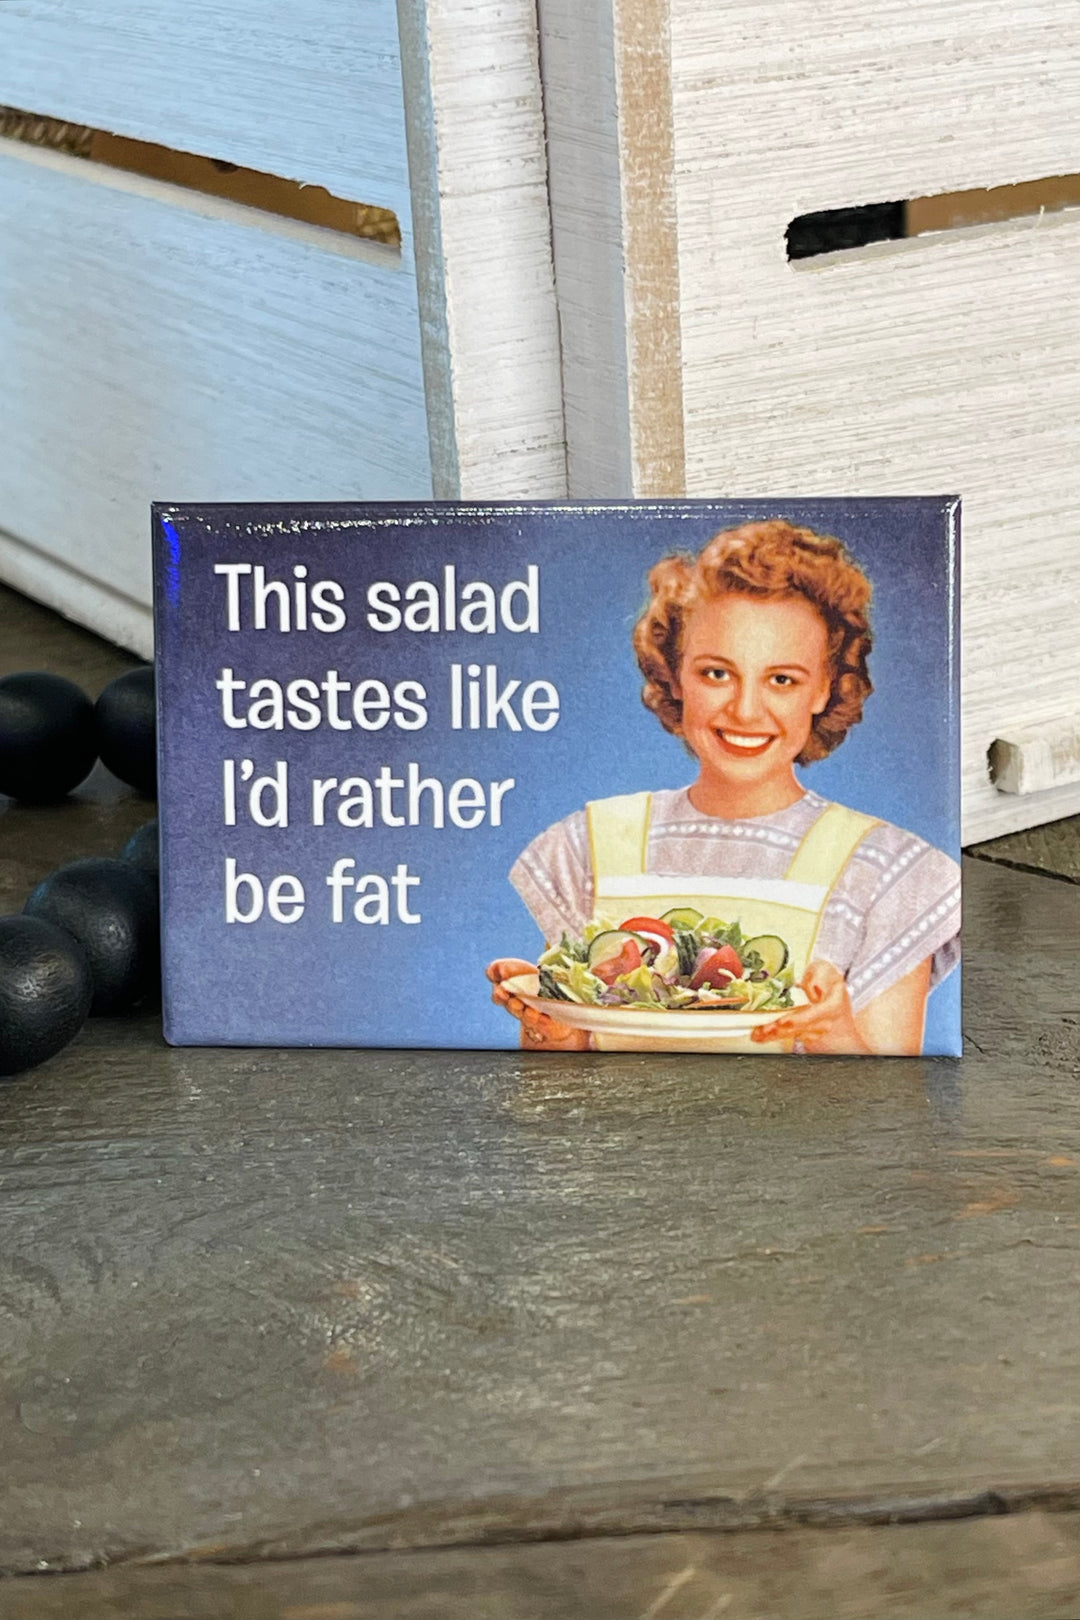 MAGNET: This salad tastes like...